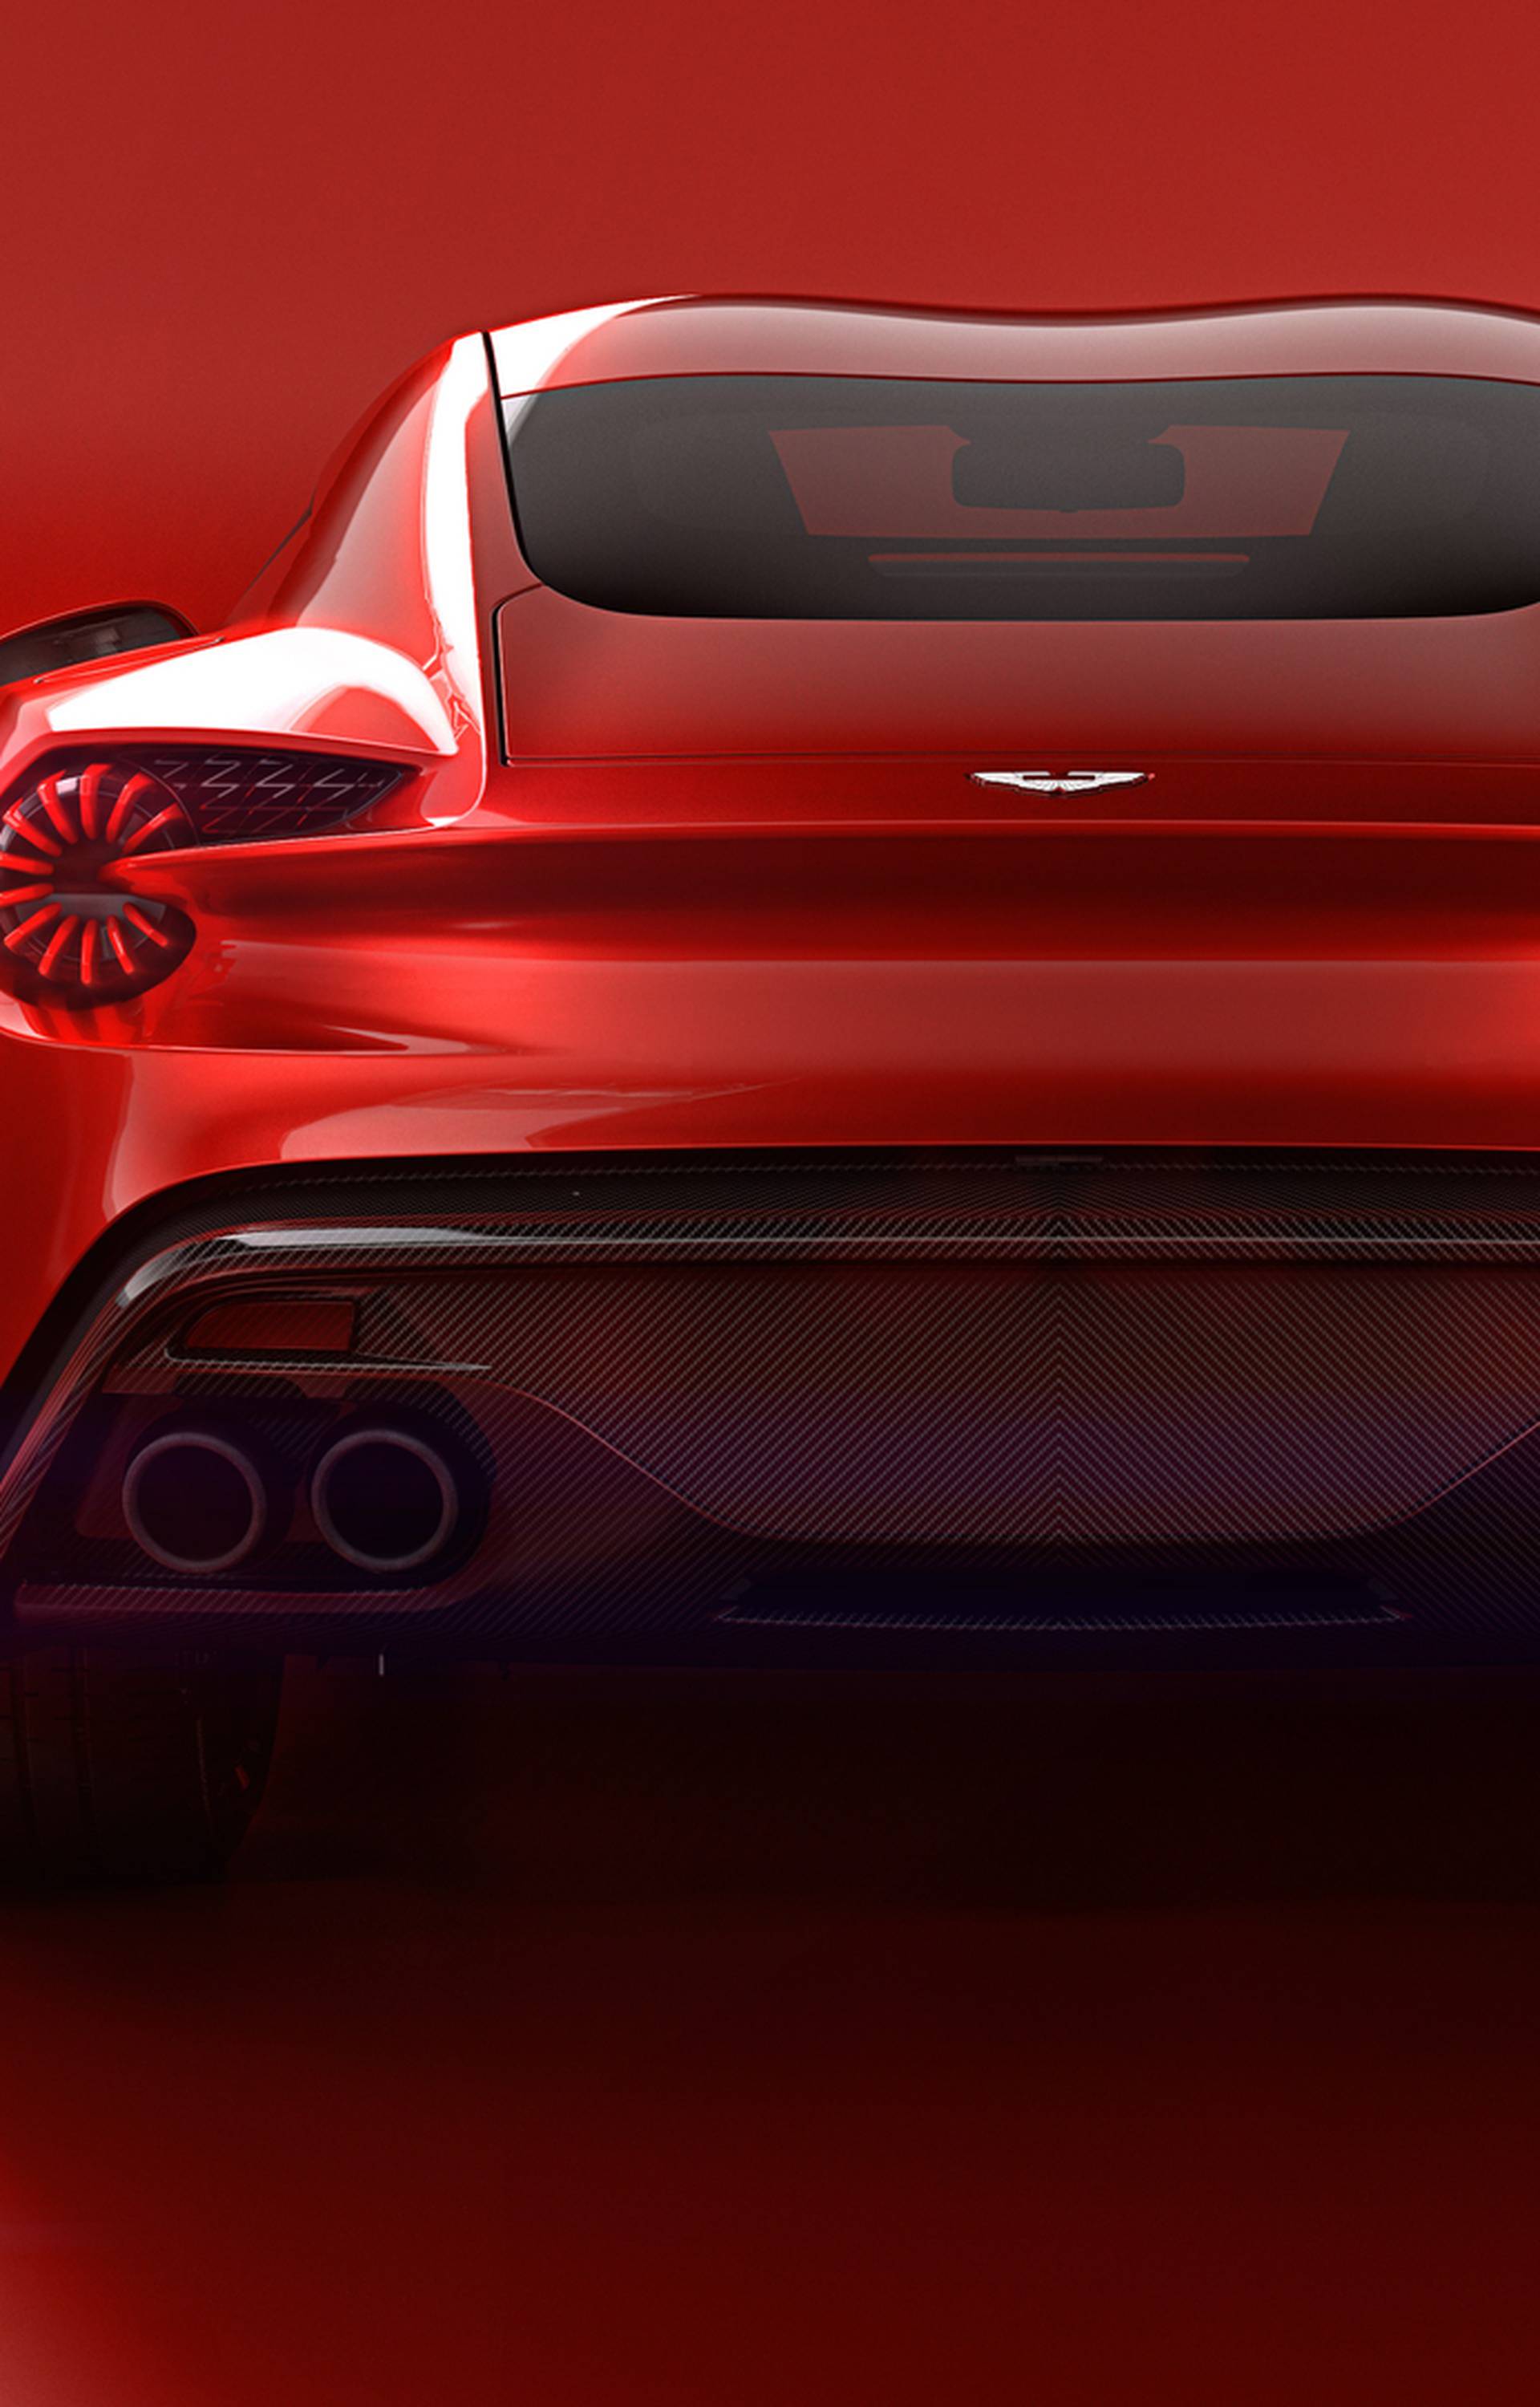 Kakav spoj: Je li Vanquish Zagato najljepši Aston Martin?